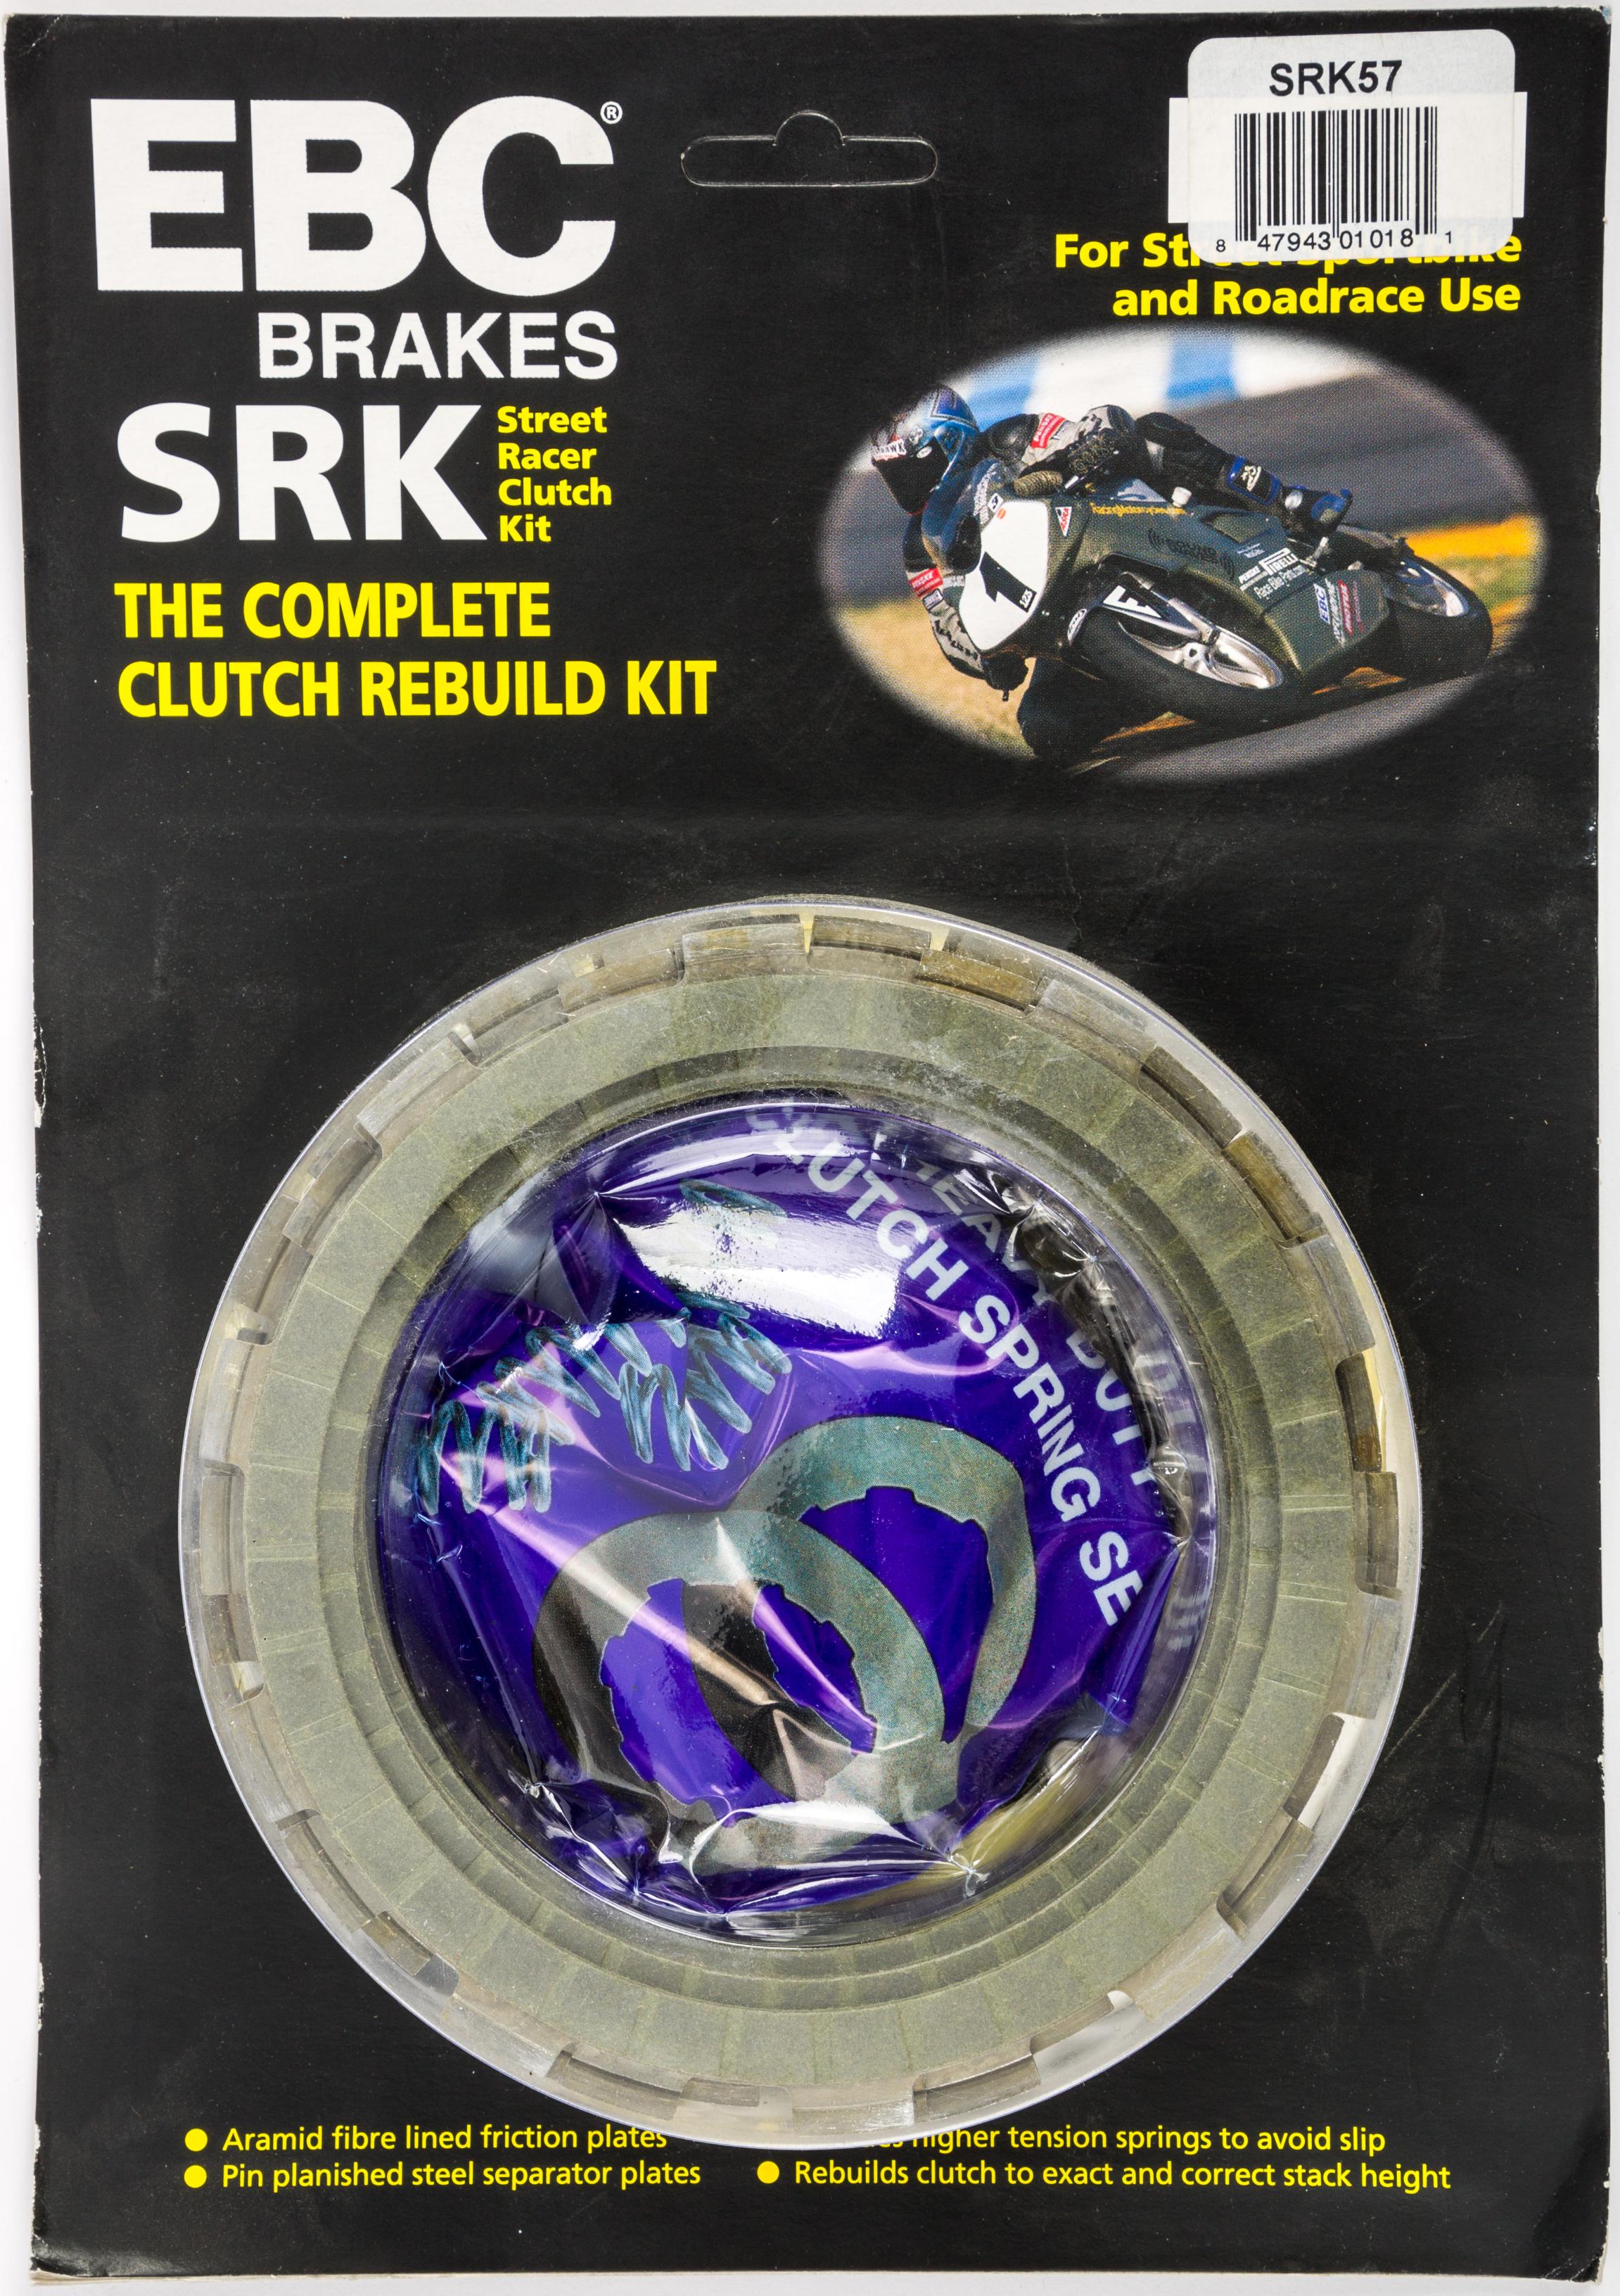 Ebc - Srk Complete Clutch Kit - SRK57